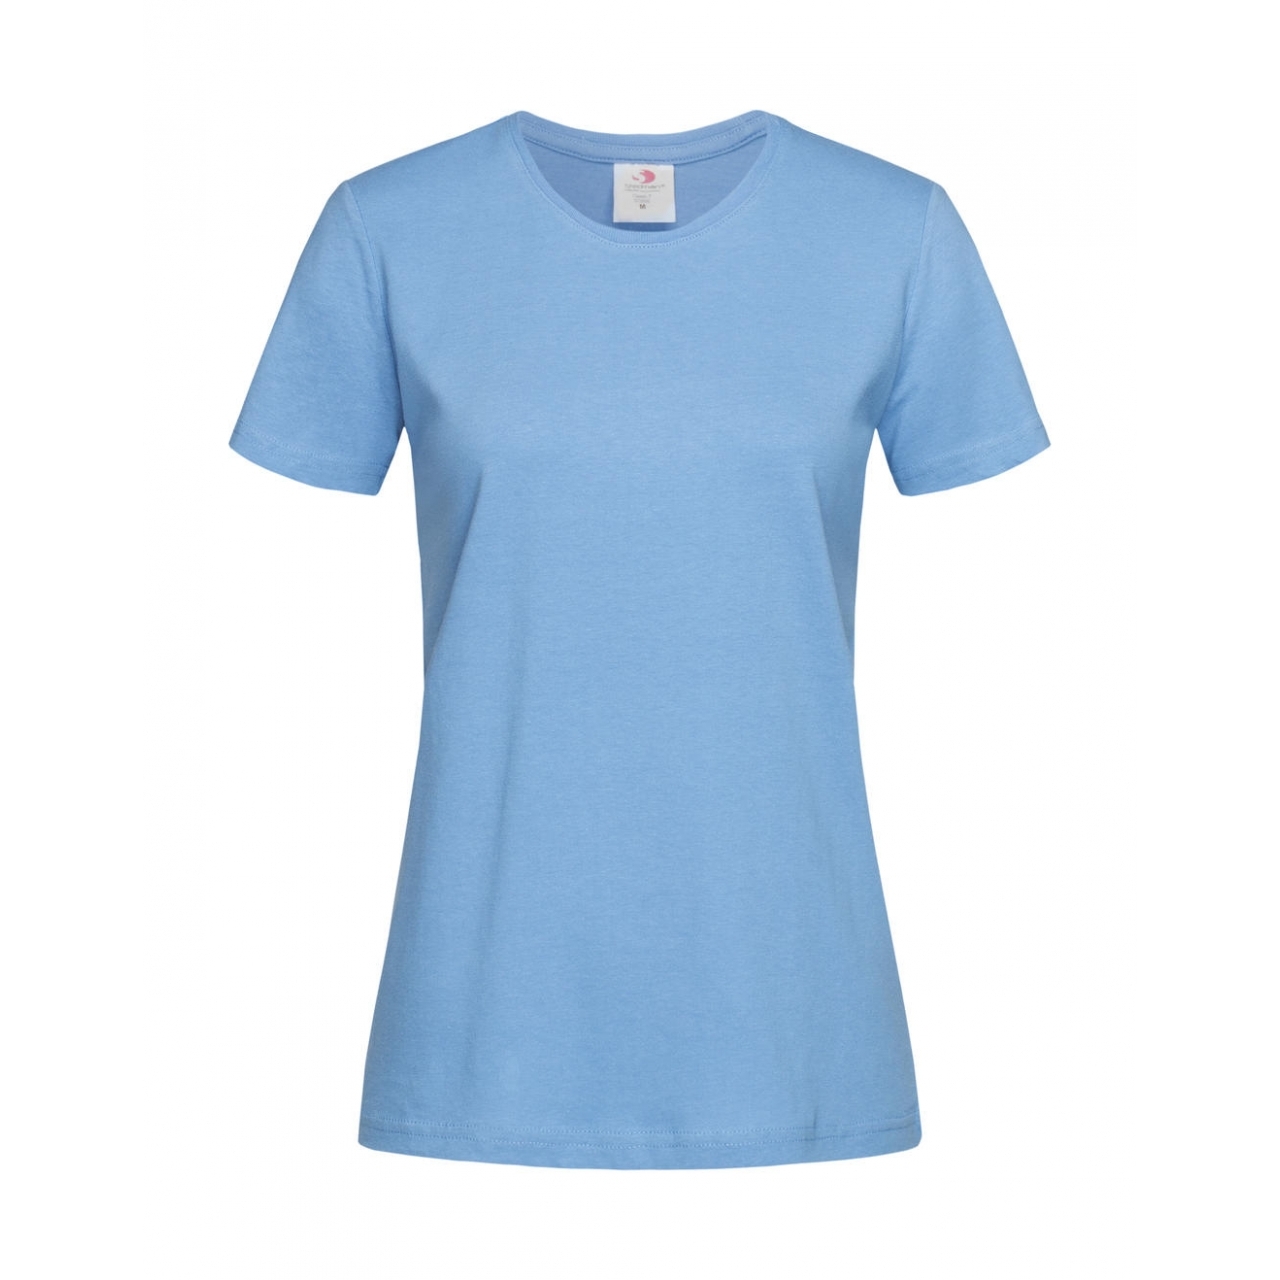 Tričko dámské Stedman Fitted s kulatým výstřihem - světle modré, XL